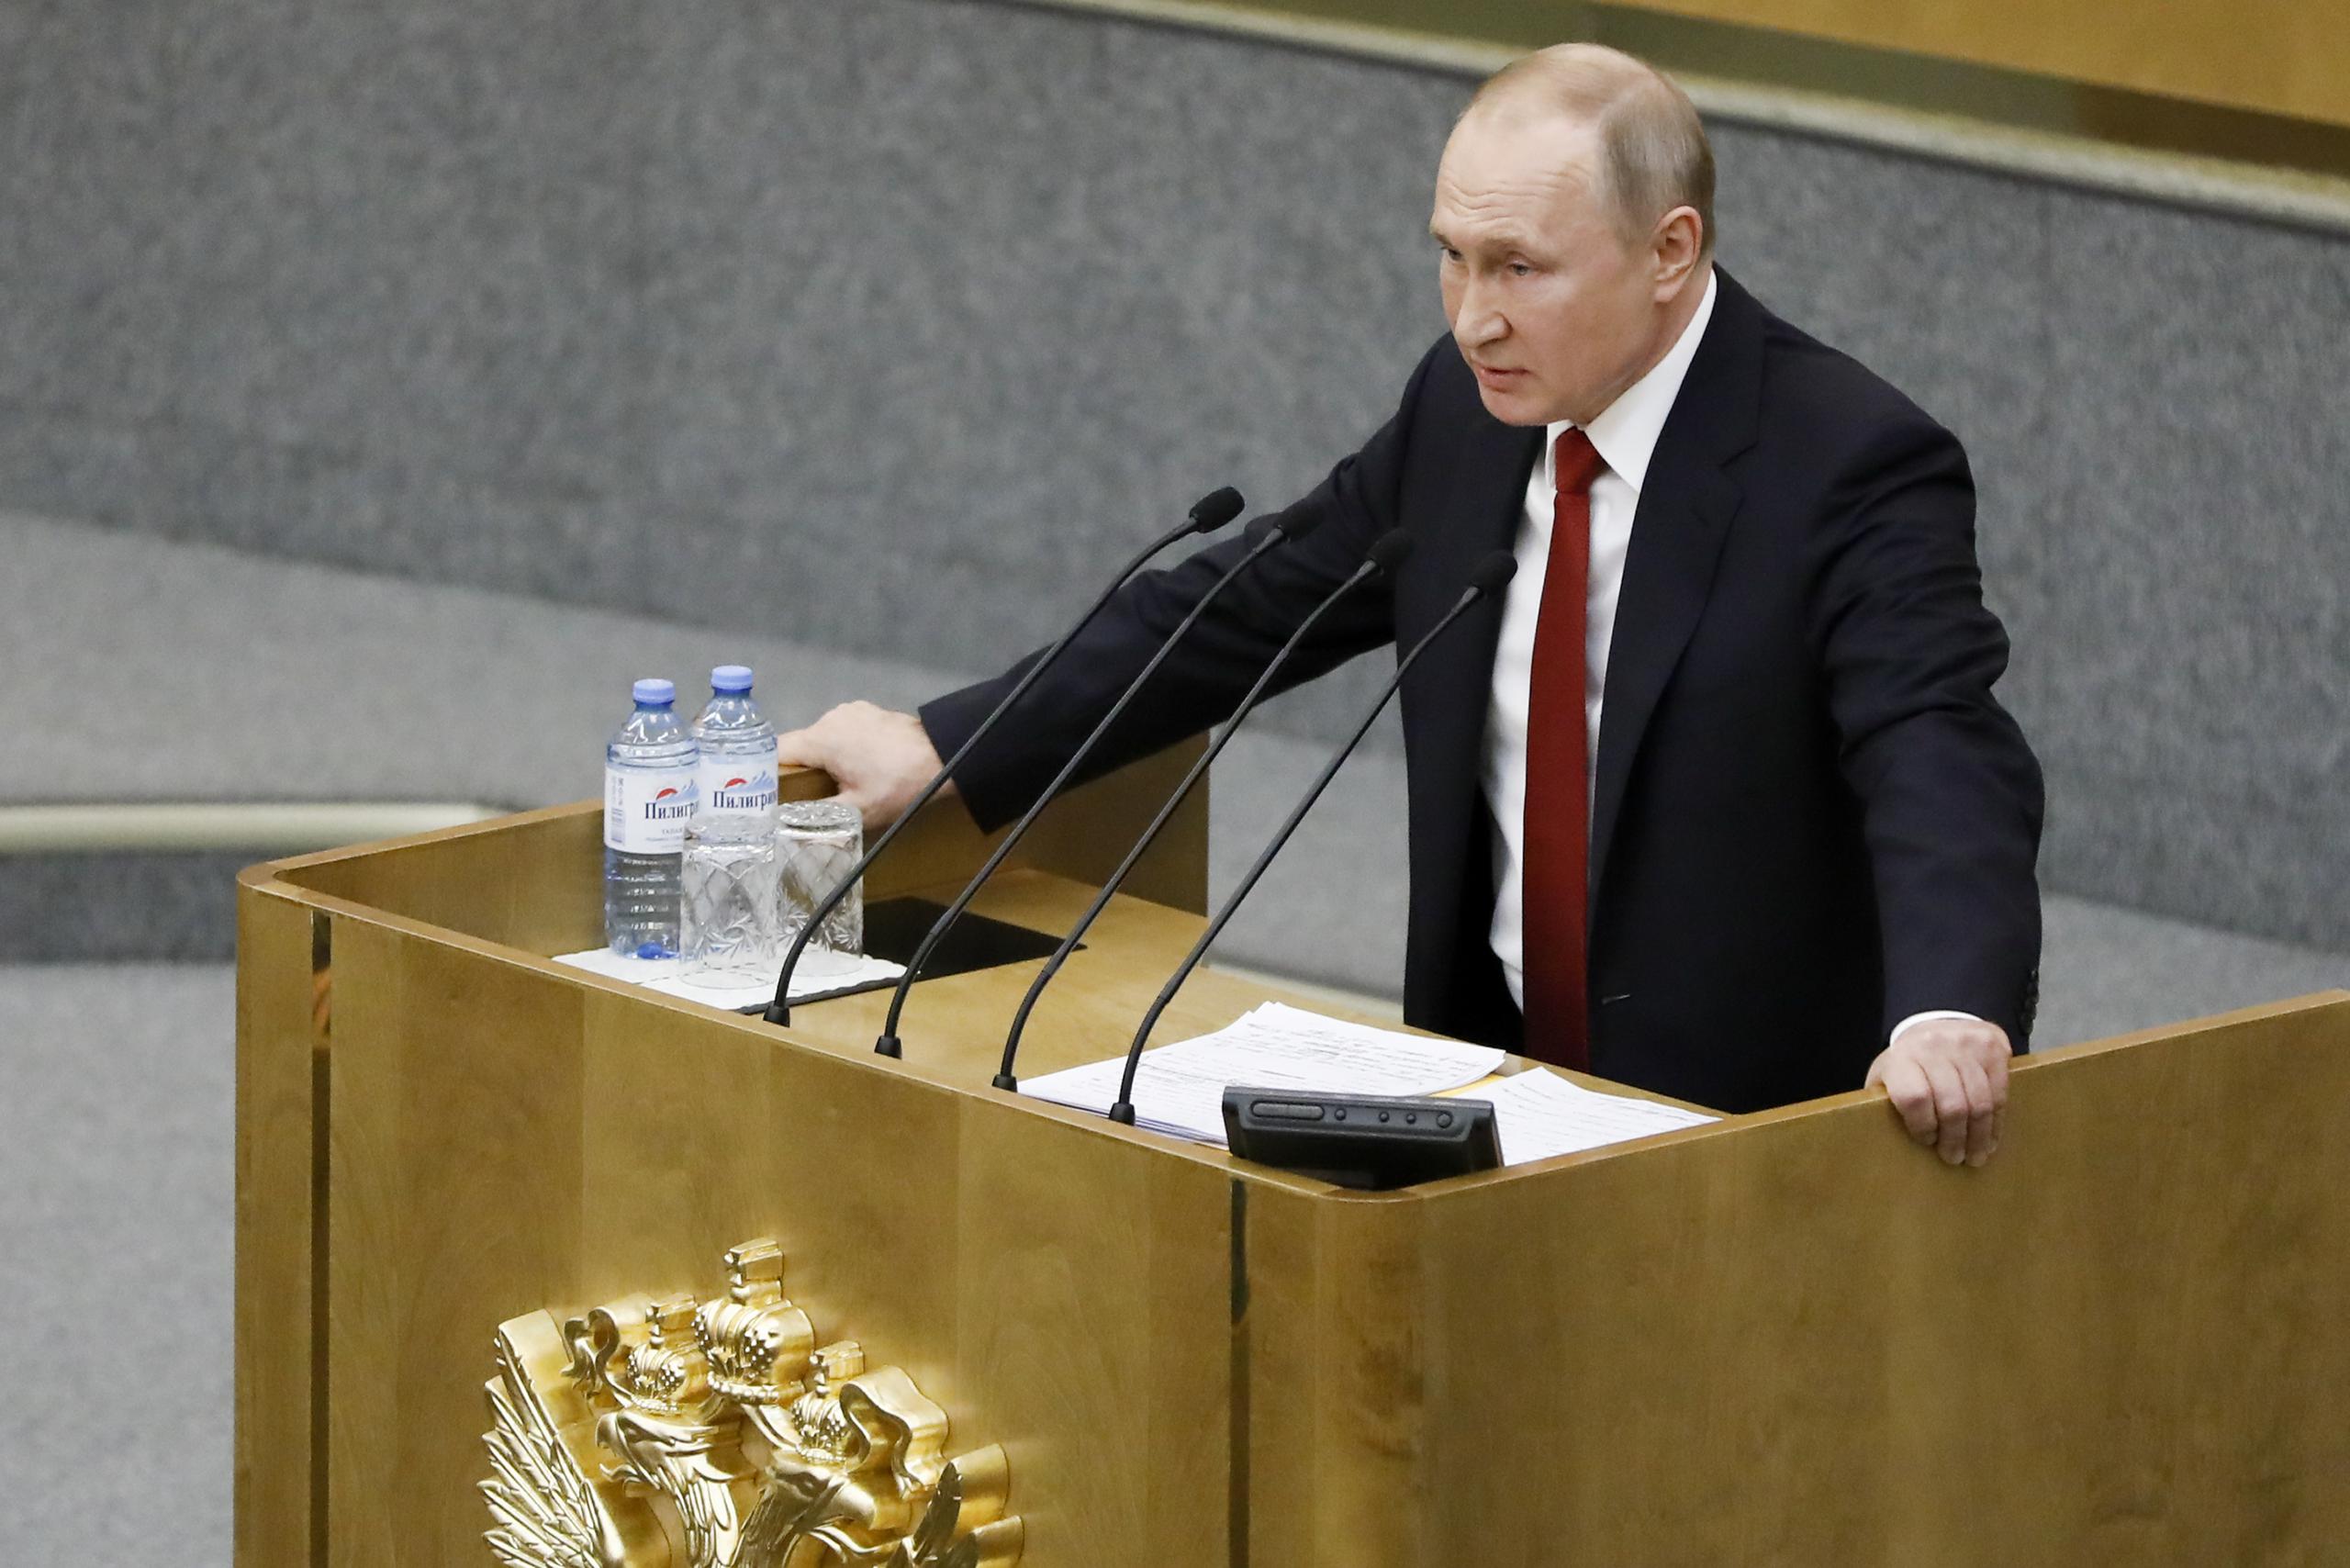 El presidente ruso Vladimir Putin habla en una sesión previa a la votación sobre enmiendas constitucionales en la cámara baja del Parlamento, en Moscú